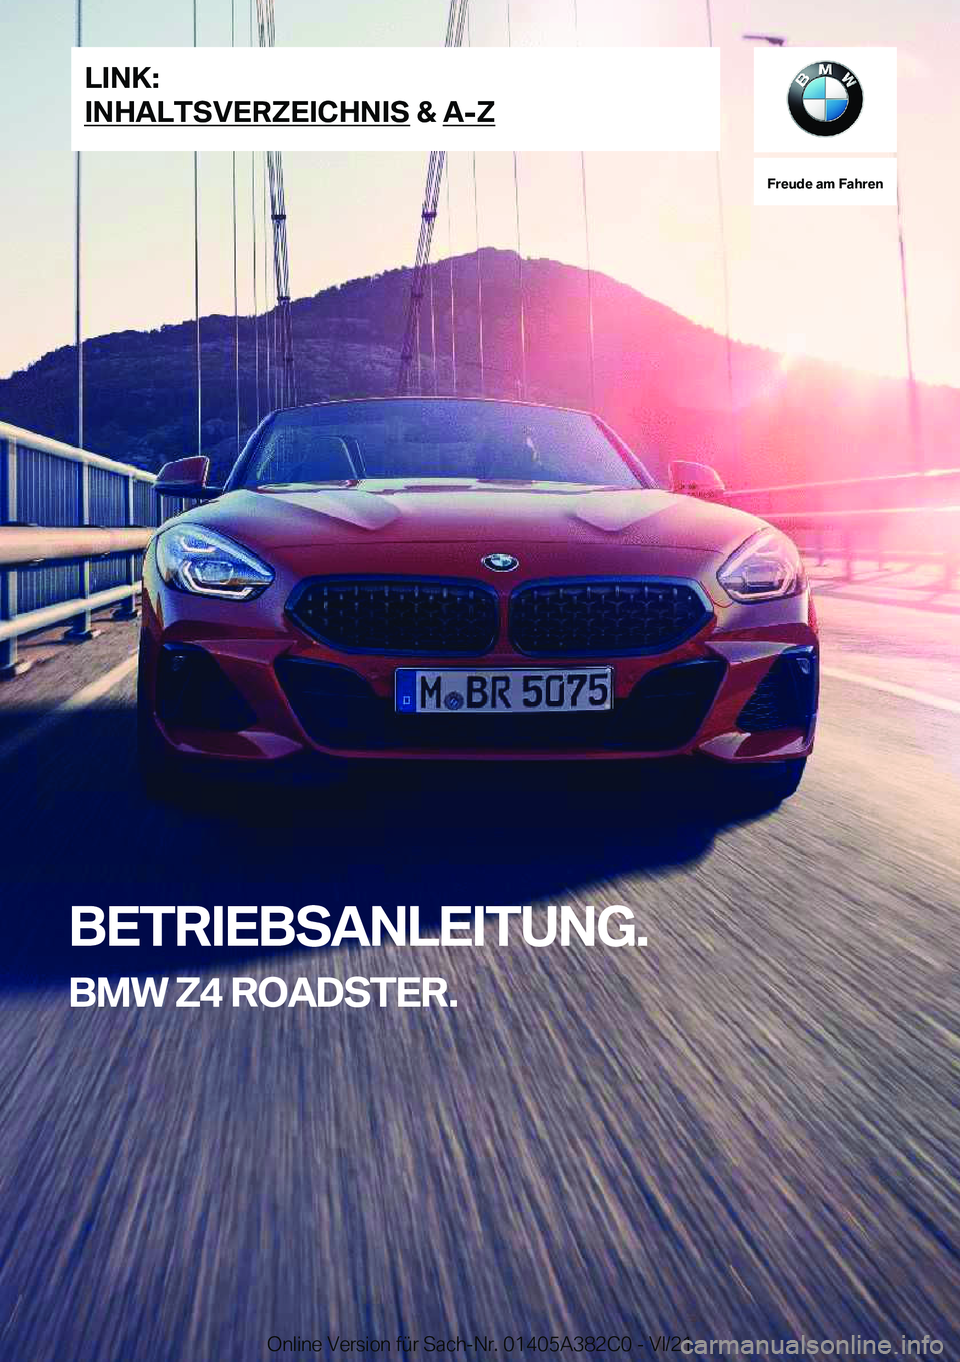 BMW Z4 2022  Betriebsanleitungen (in German) �F�r�e�u�d�e��a�m��F�a�h�r�e�n
�B�E�T�R�I�E�B�S�A�N�L�E�I�T�U�N�G�.�B�M�W��Z�4��R�O�A�D�S�T�E�R�.�L�I�N�K�:
�I�N�H�A�L�T�S�V�E�R�Z�E�I�C�H�N�I�S��&��A�-�Z�O�n�l�i�n�e��V�e�r�s�i�o�n��f�